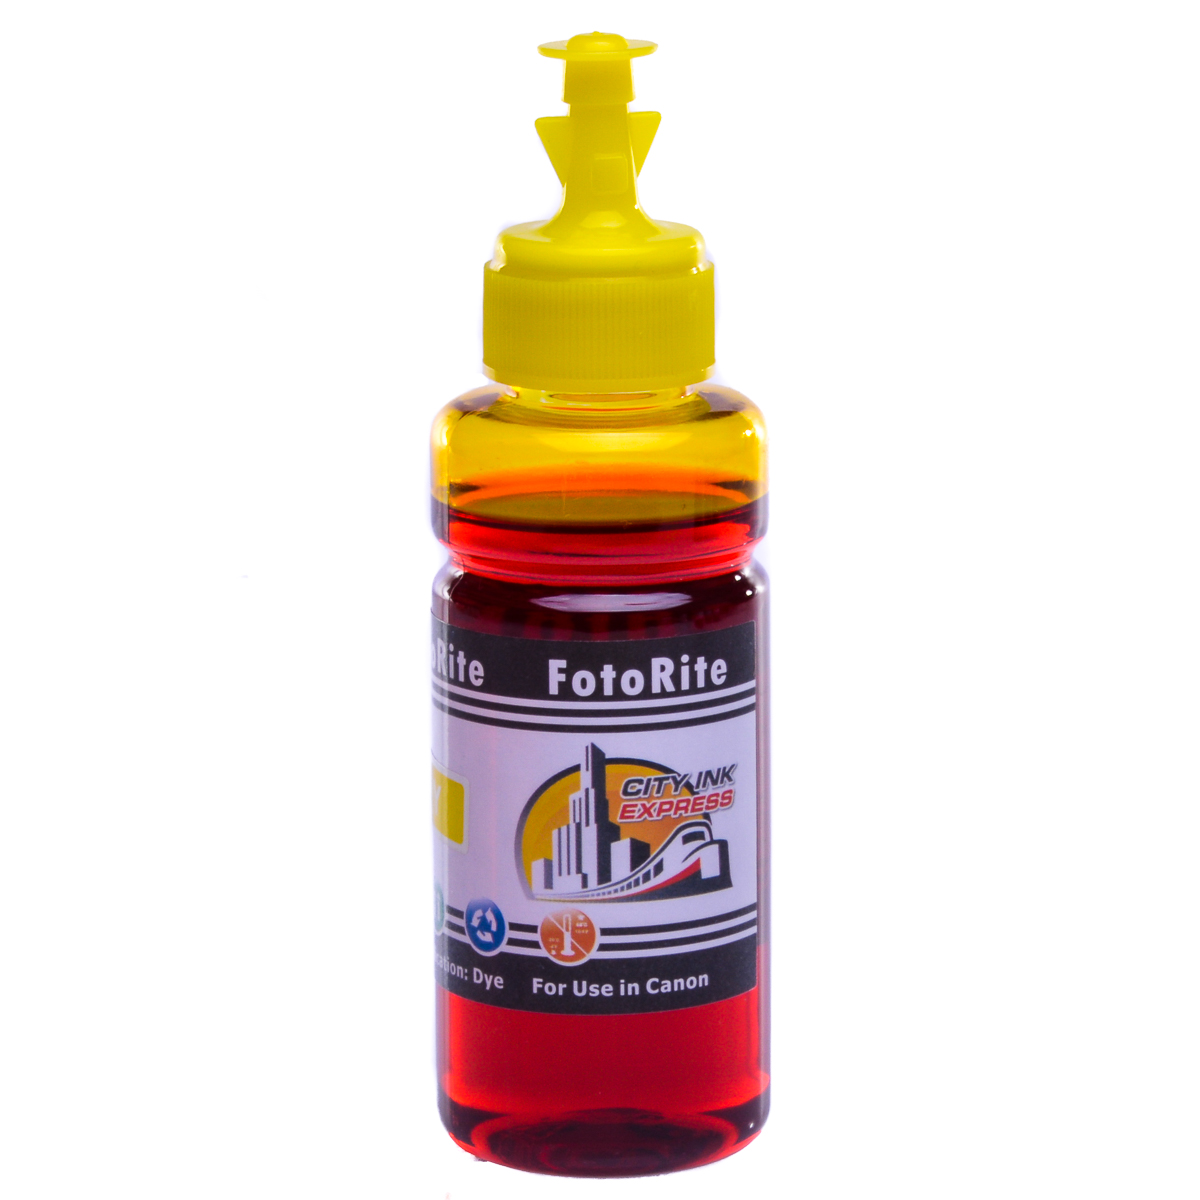 Cheap Yellow dye ink replaces Canon Pixma IX6250 - CLI-526Y